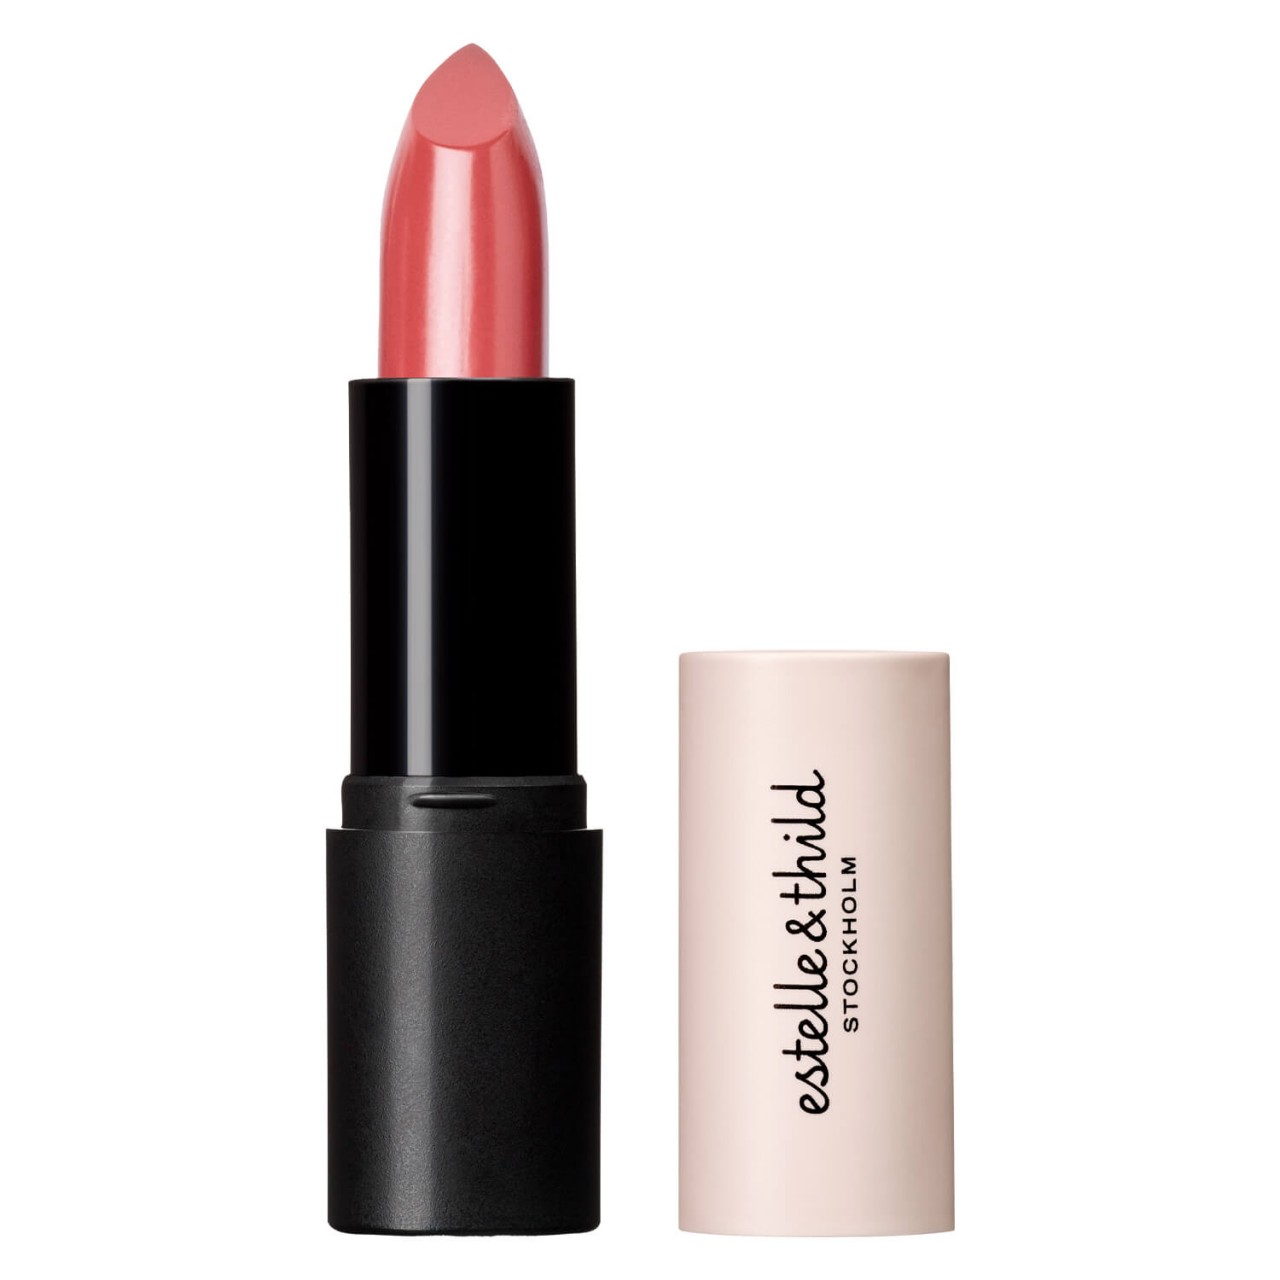 Estelle&Thild Make-Up - Cream Lipstick Magnolia von Estelle&Thild